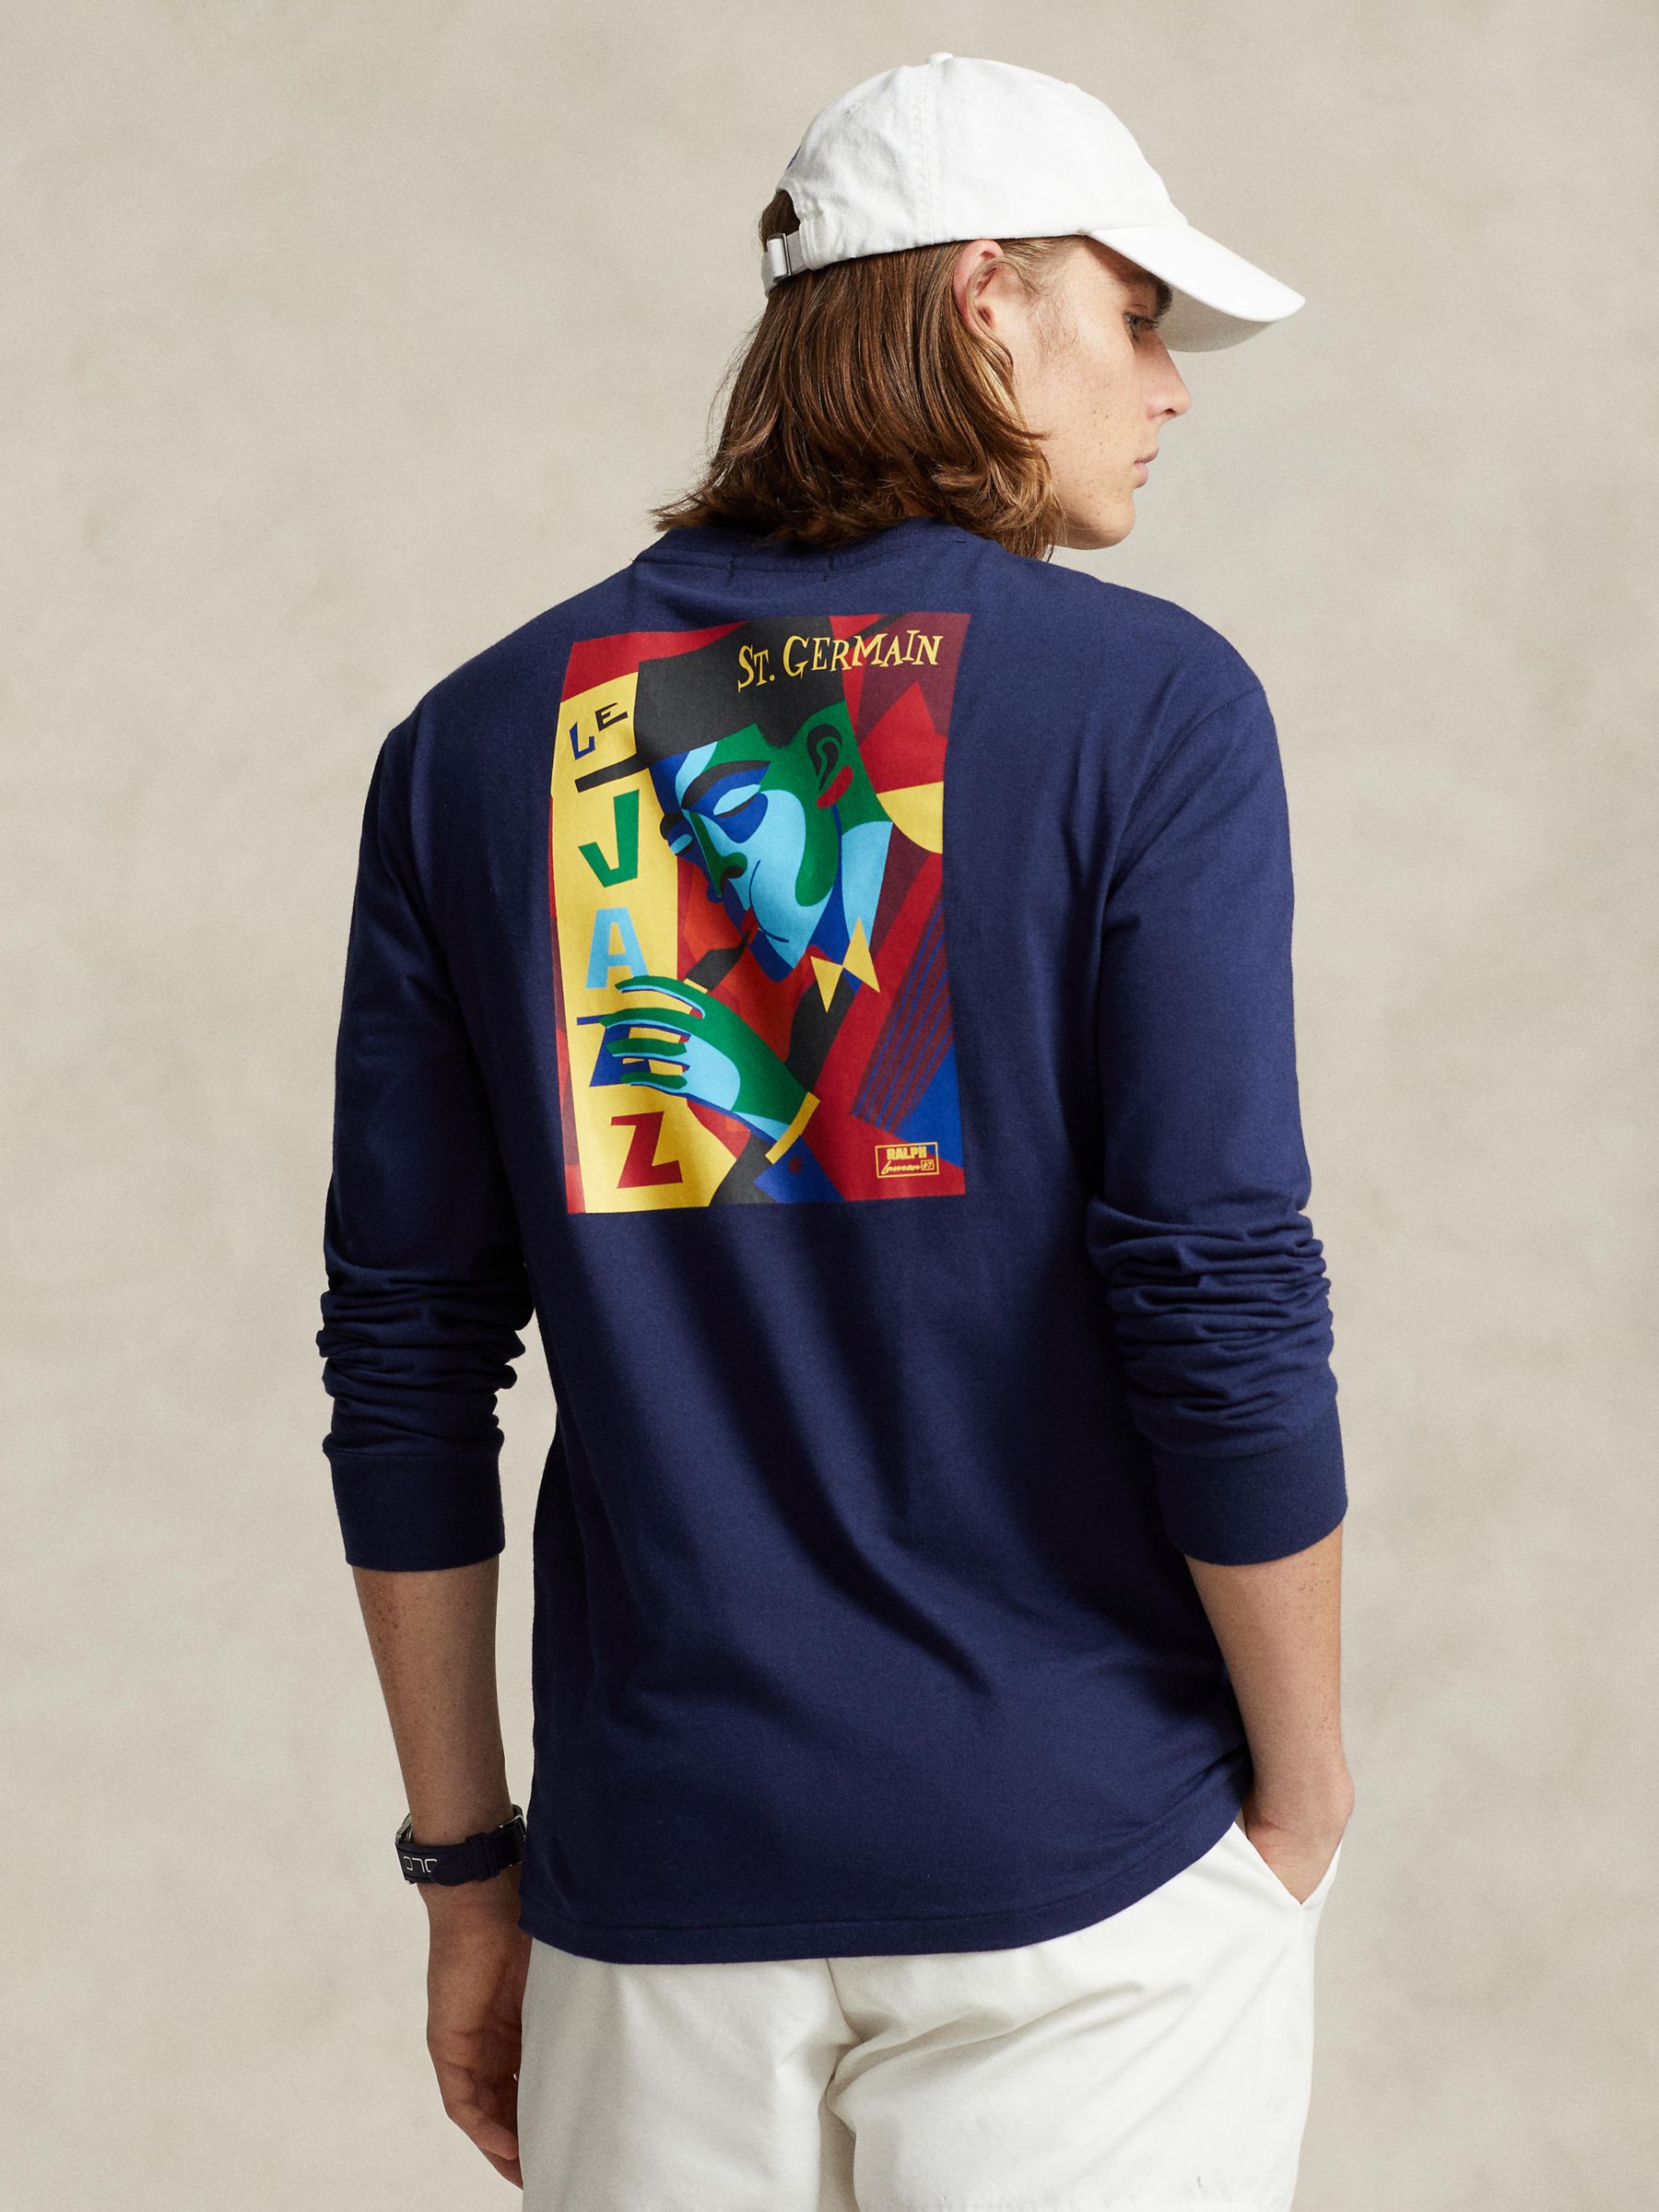 Ralph Lauren Cotton Logo Embroidered Long Sleeved T-Shirt, Newport Navy, S